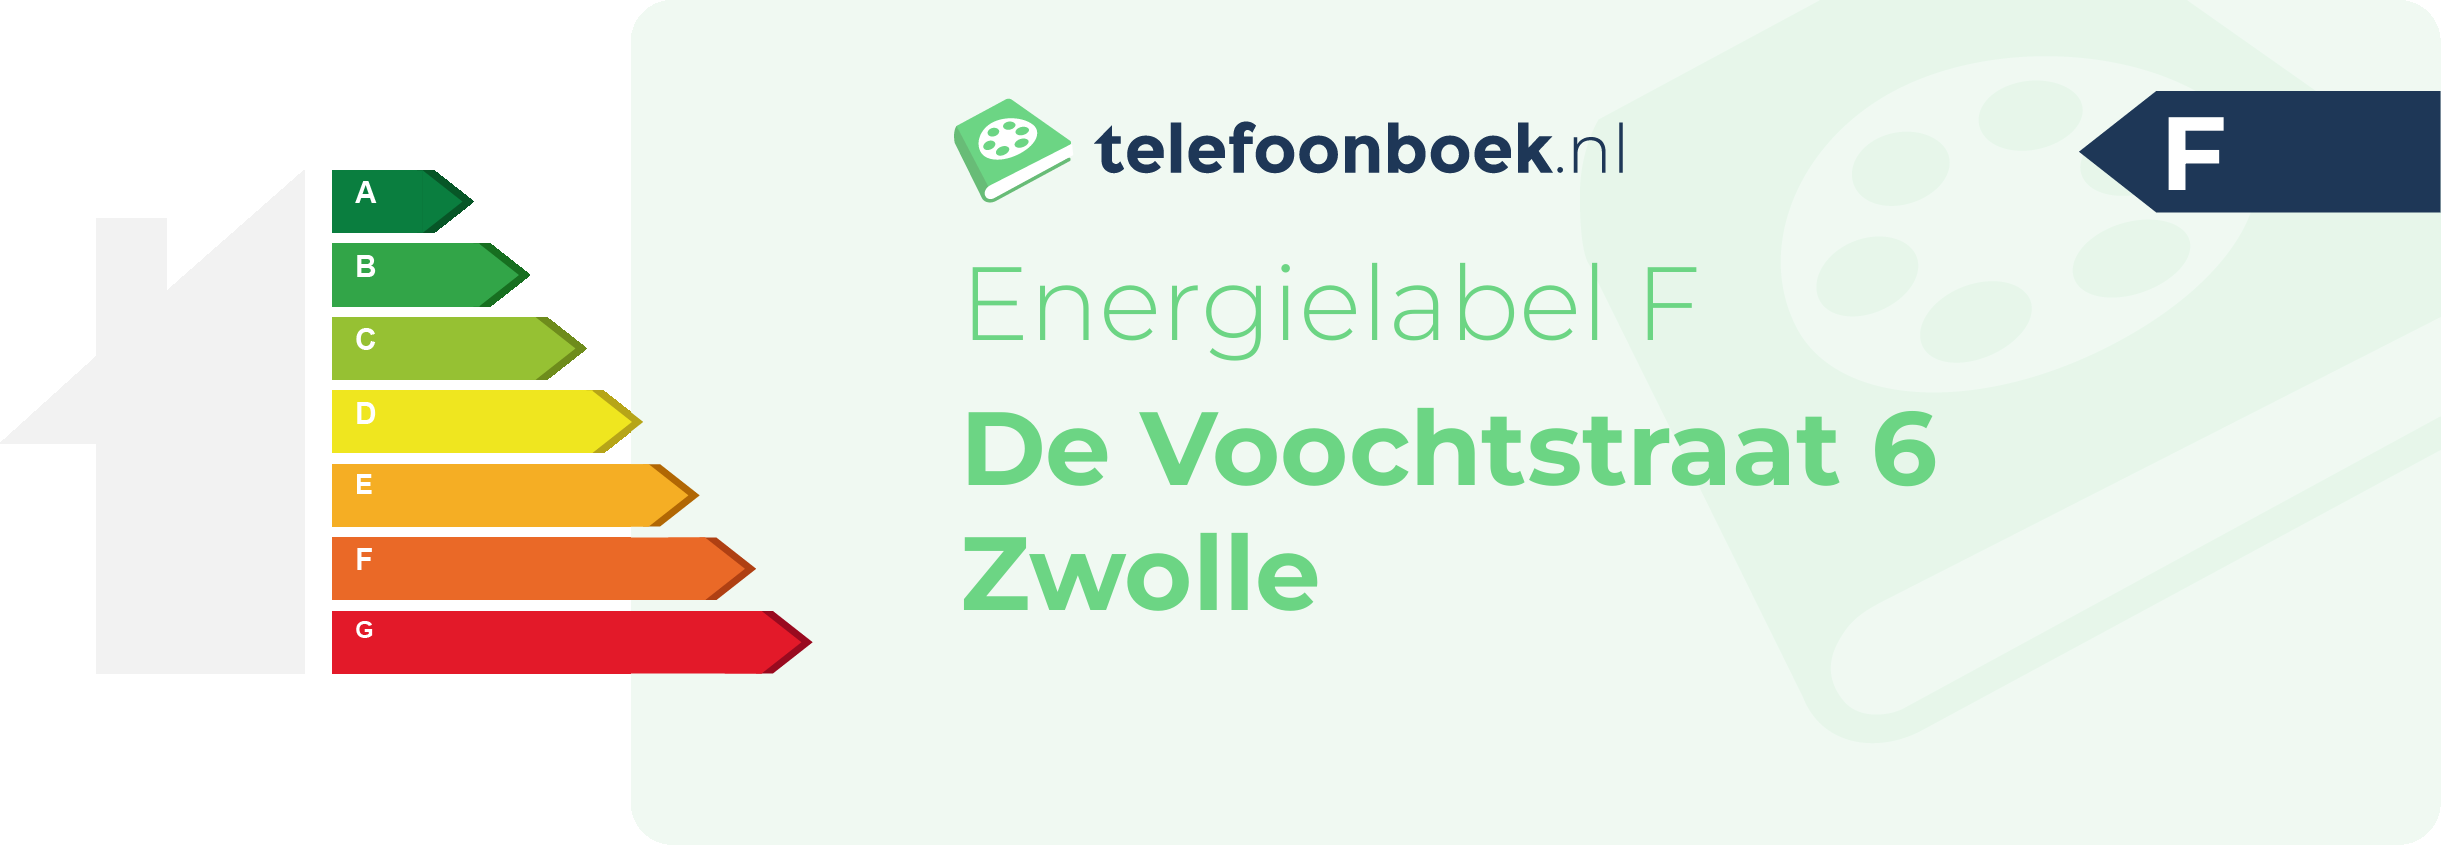 Energielabel De Voochtstraat 6 Zwolle